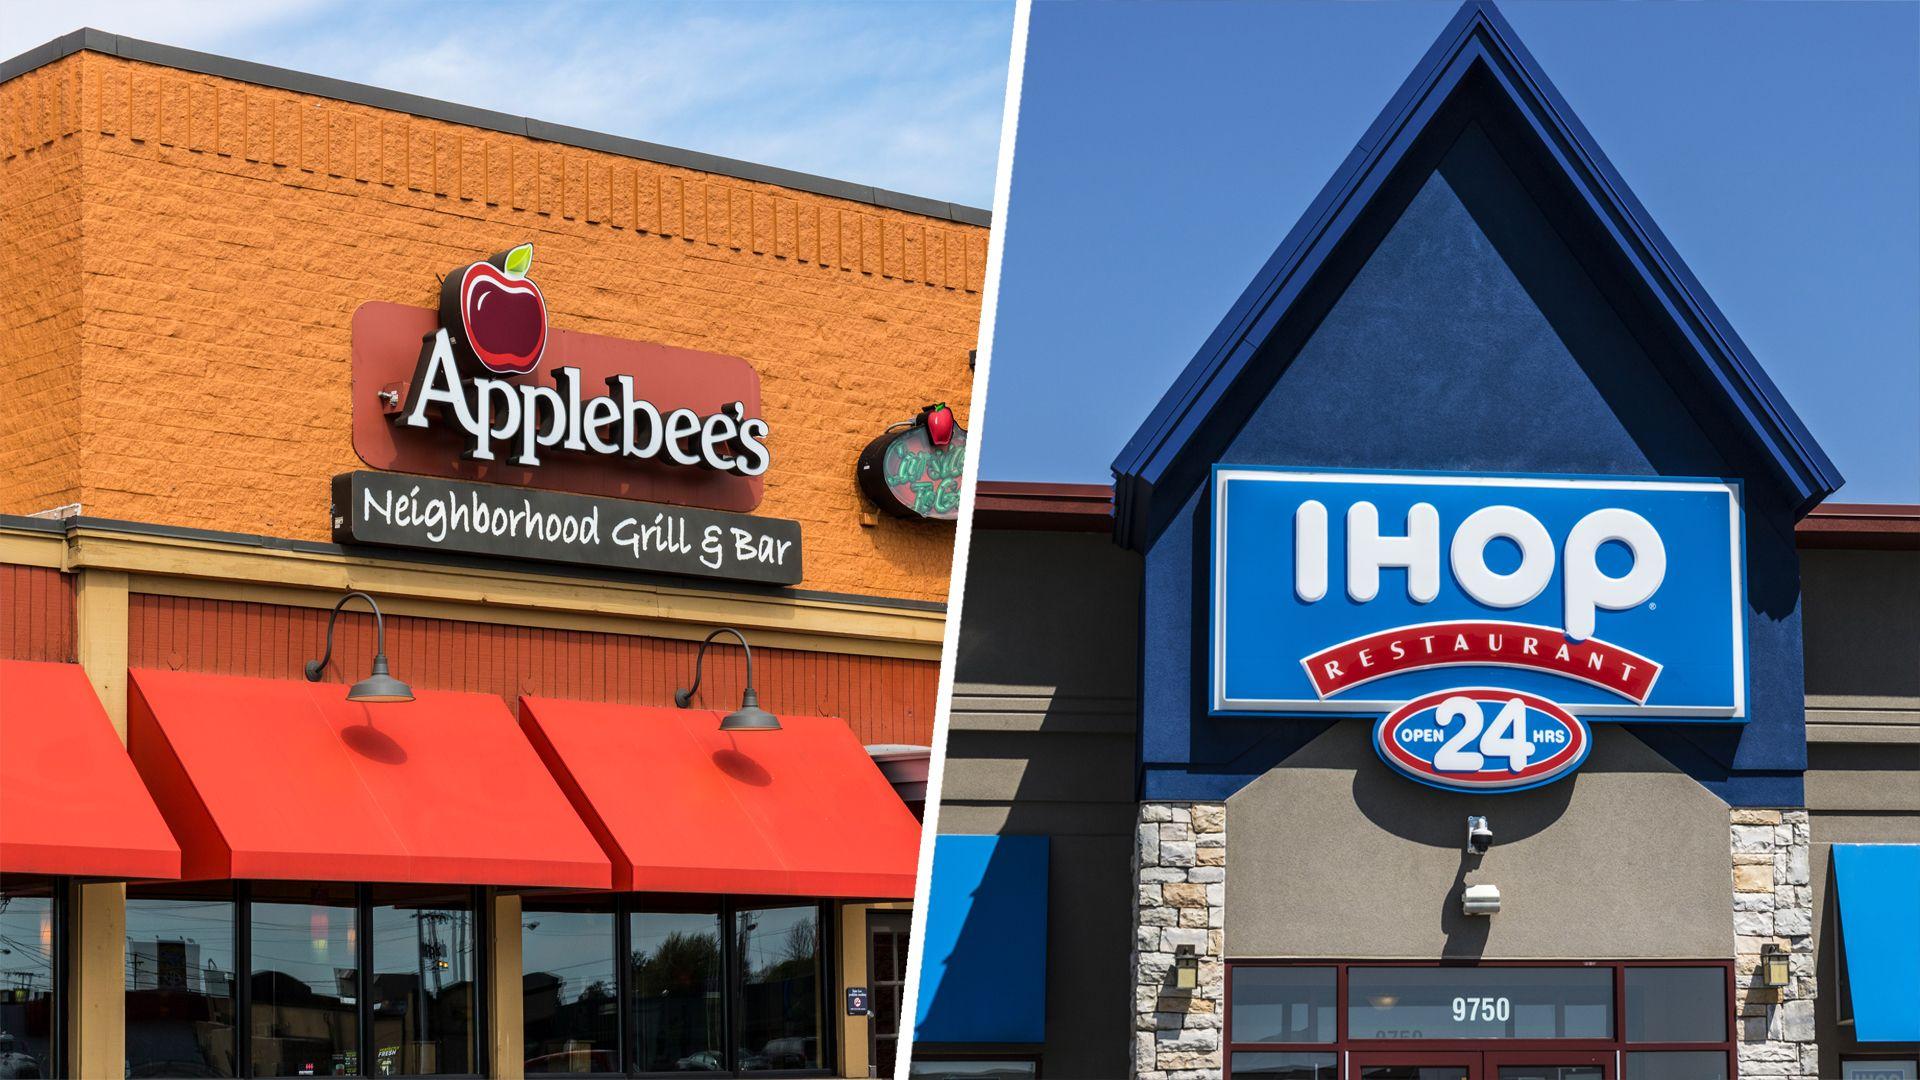 Applebee's Ihop Logo - Applebee's and IHOP hybrid restaurant opened in Detroit